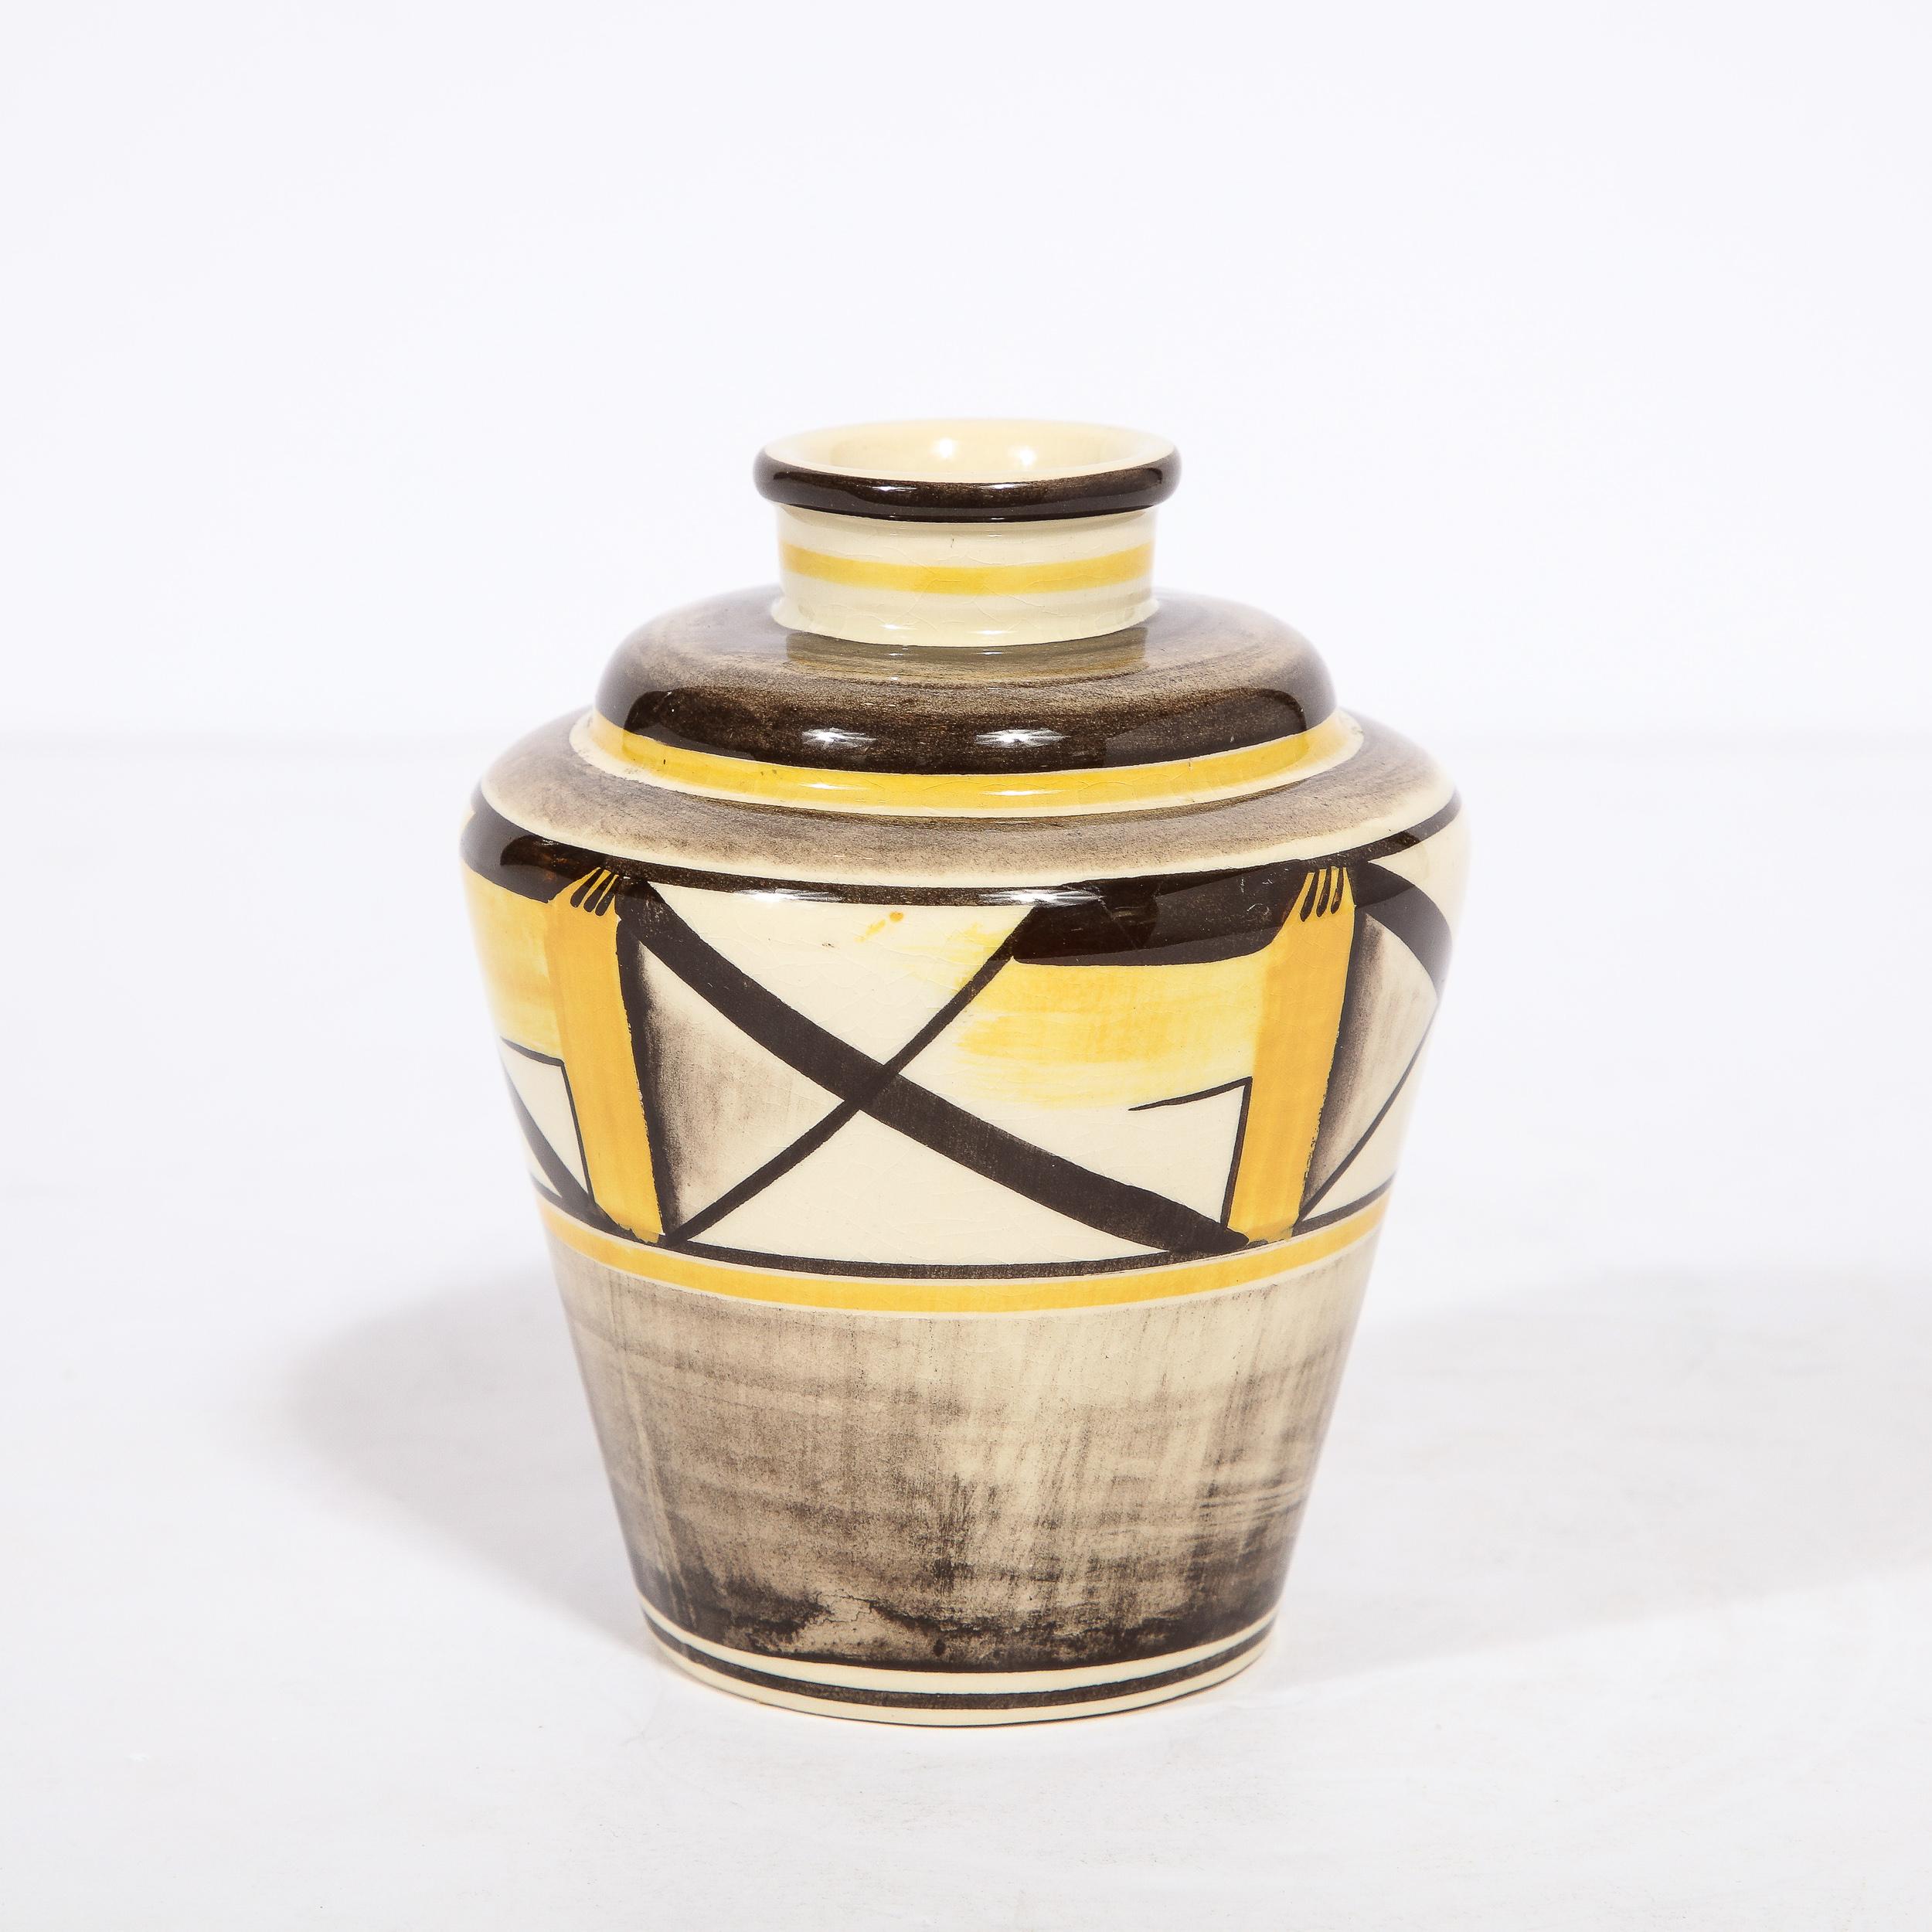 Ce superbe vase en céramique peint à la main a été réalisé par l'estimé céramiste suédois Arthur Percy pour Gefle vers 1920. Il présente un corps subtilement conique avec des épaules inclinées insérées, un col cylindrique et une bouche circulaire.